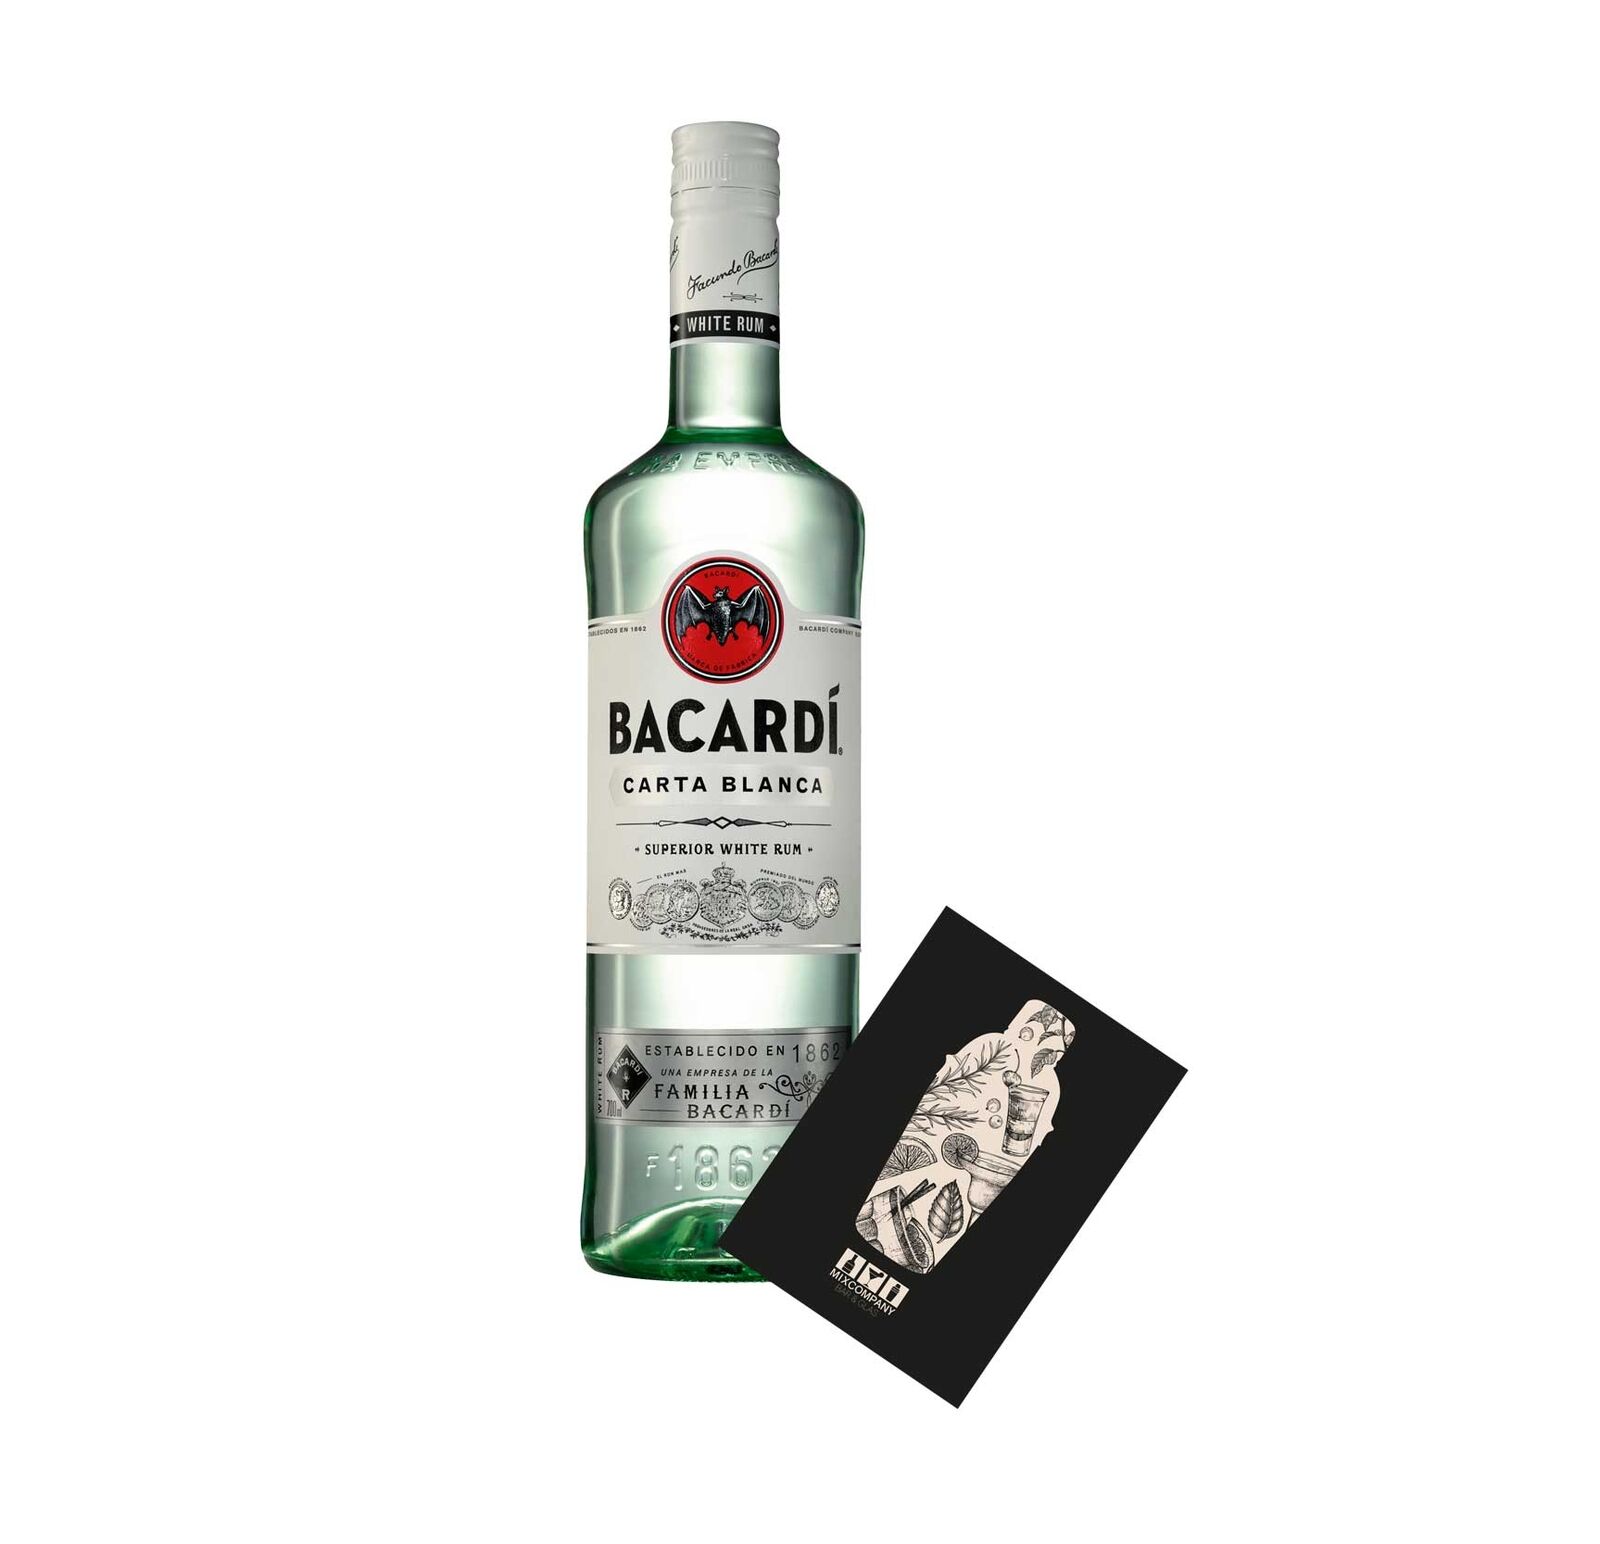 Bacardi Carta Blanca 0,7L (37,5% Vol) Superior white Rum- [Enthält Sulfite]  (266379125610) - купить на eBay.de (Германия) с доставкой в Украину